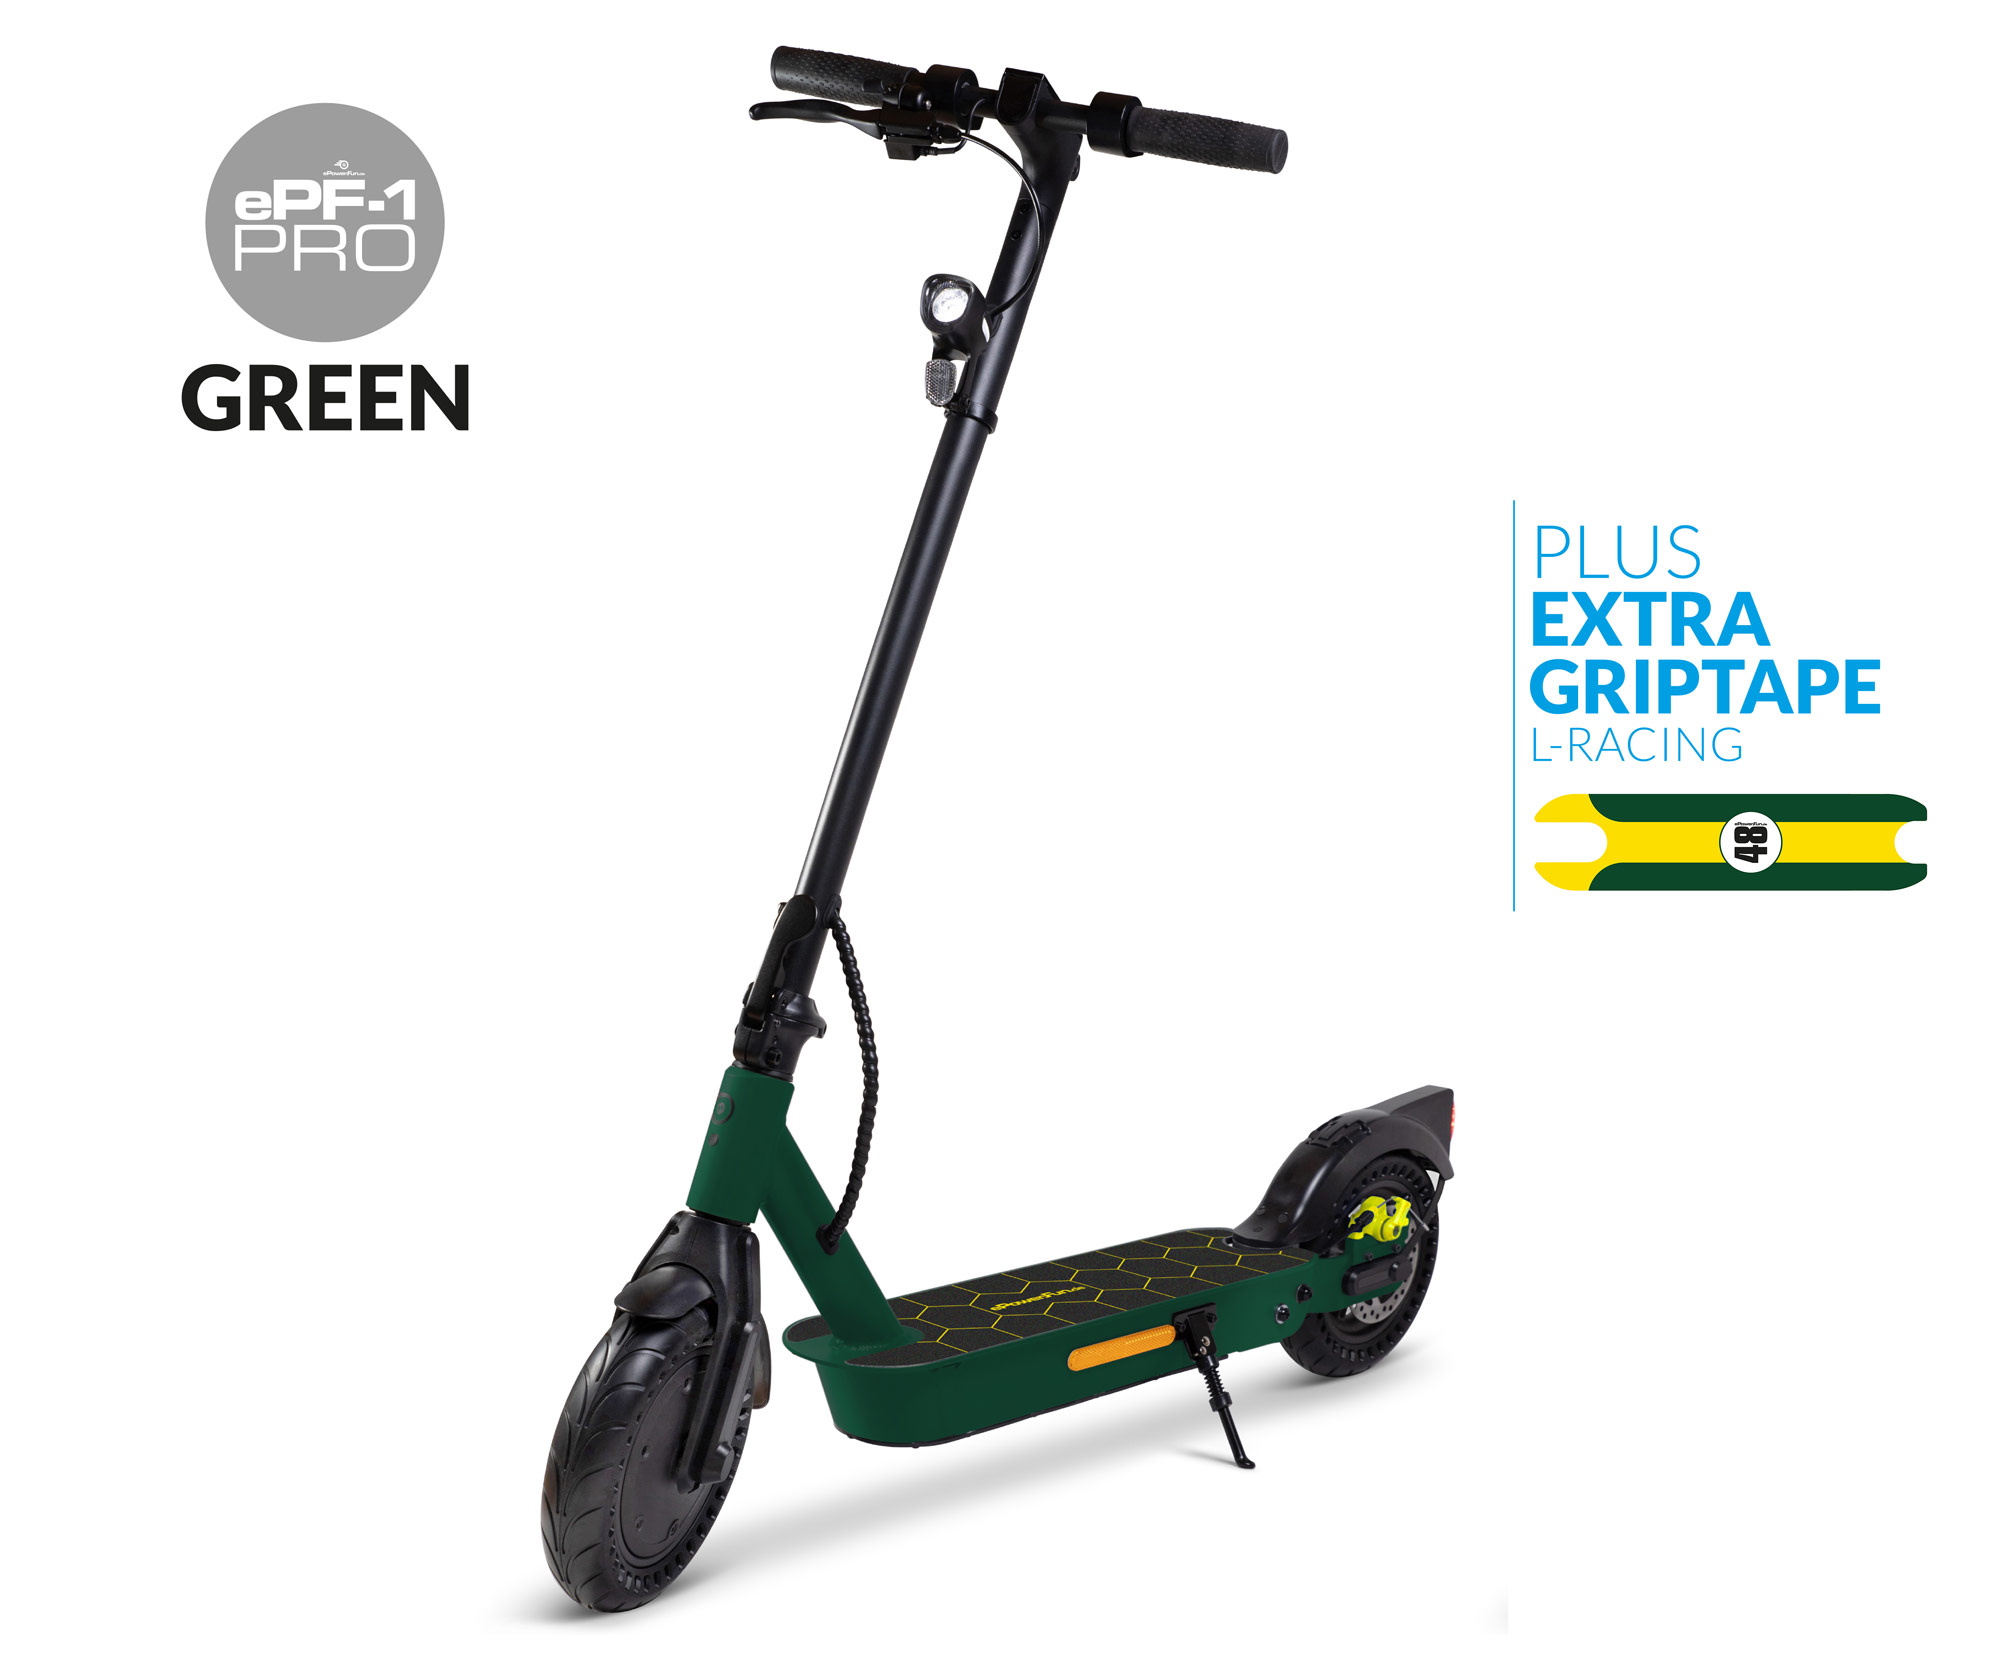 Vorbestellung - ePF-1 PRO Racing Green eScooter mit Straßenzulassung